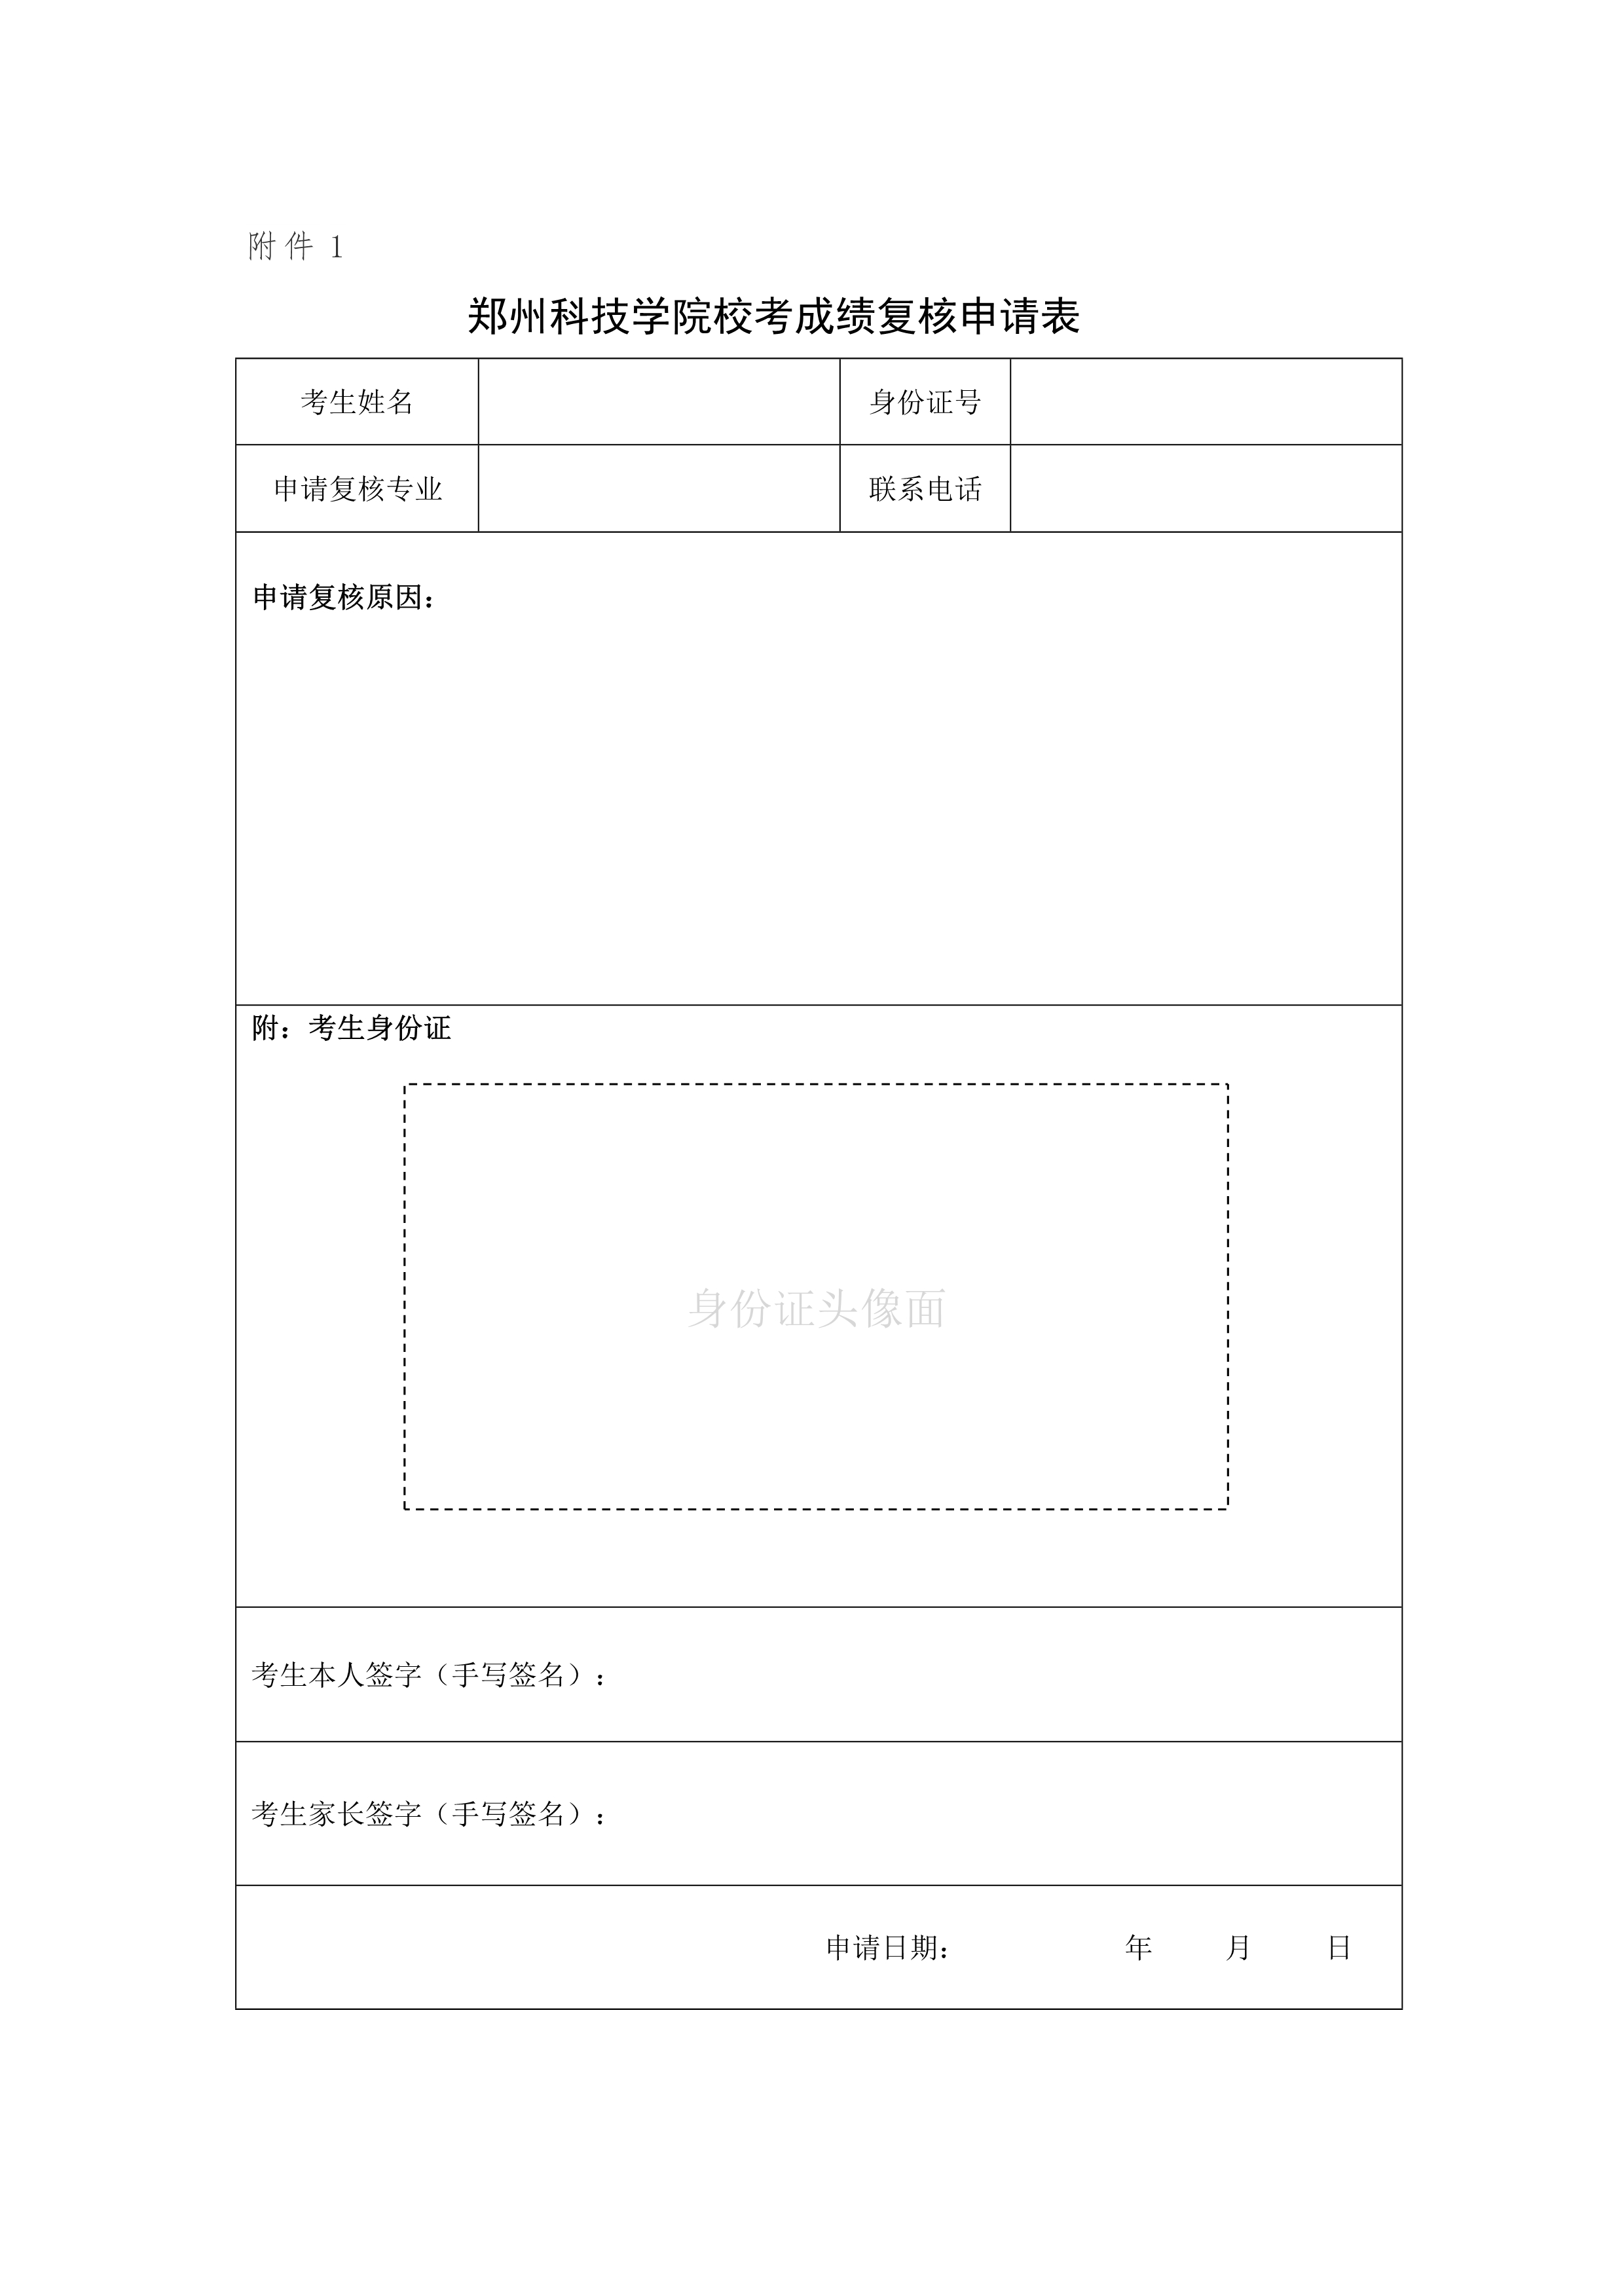 附件1-郑州科技学院校考成绩复核申请表_1.jpg